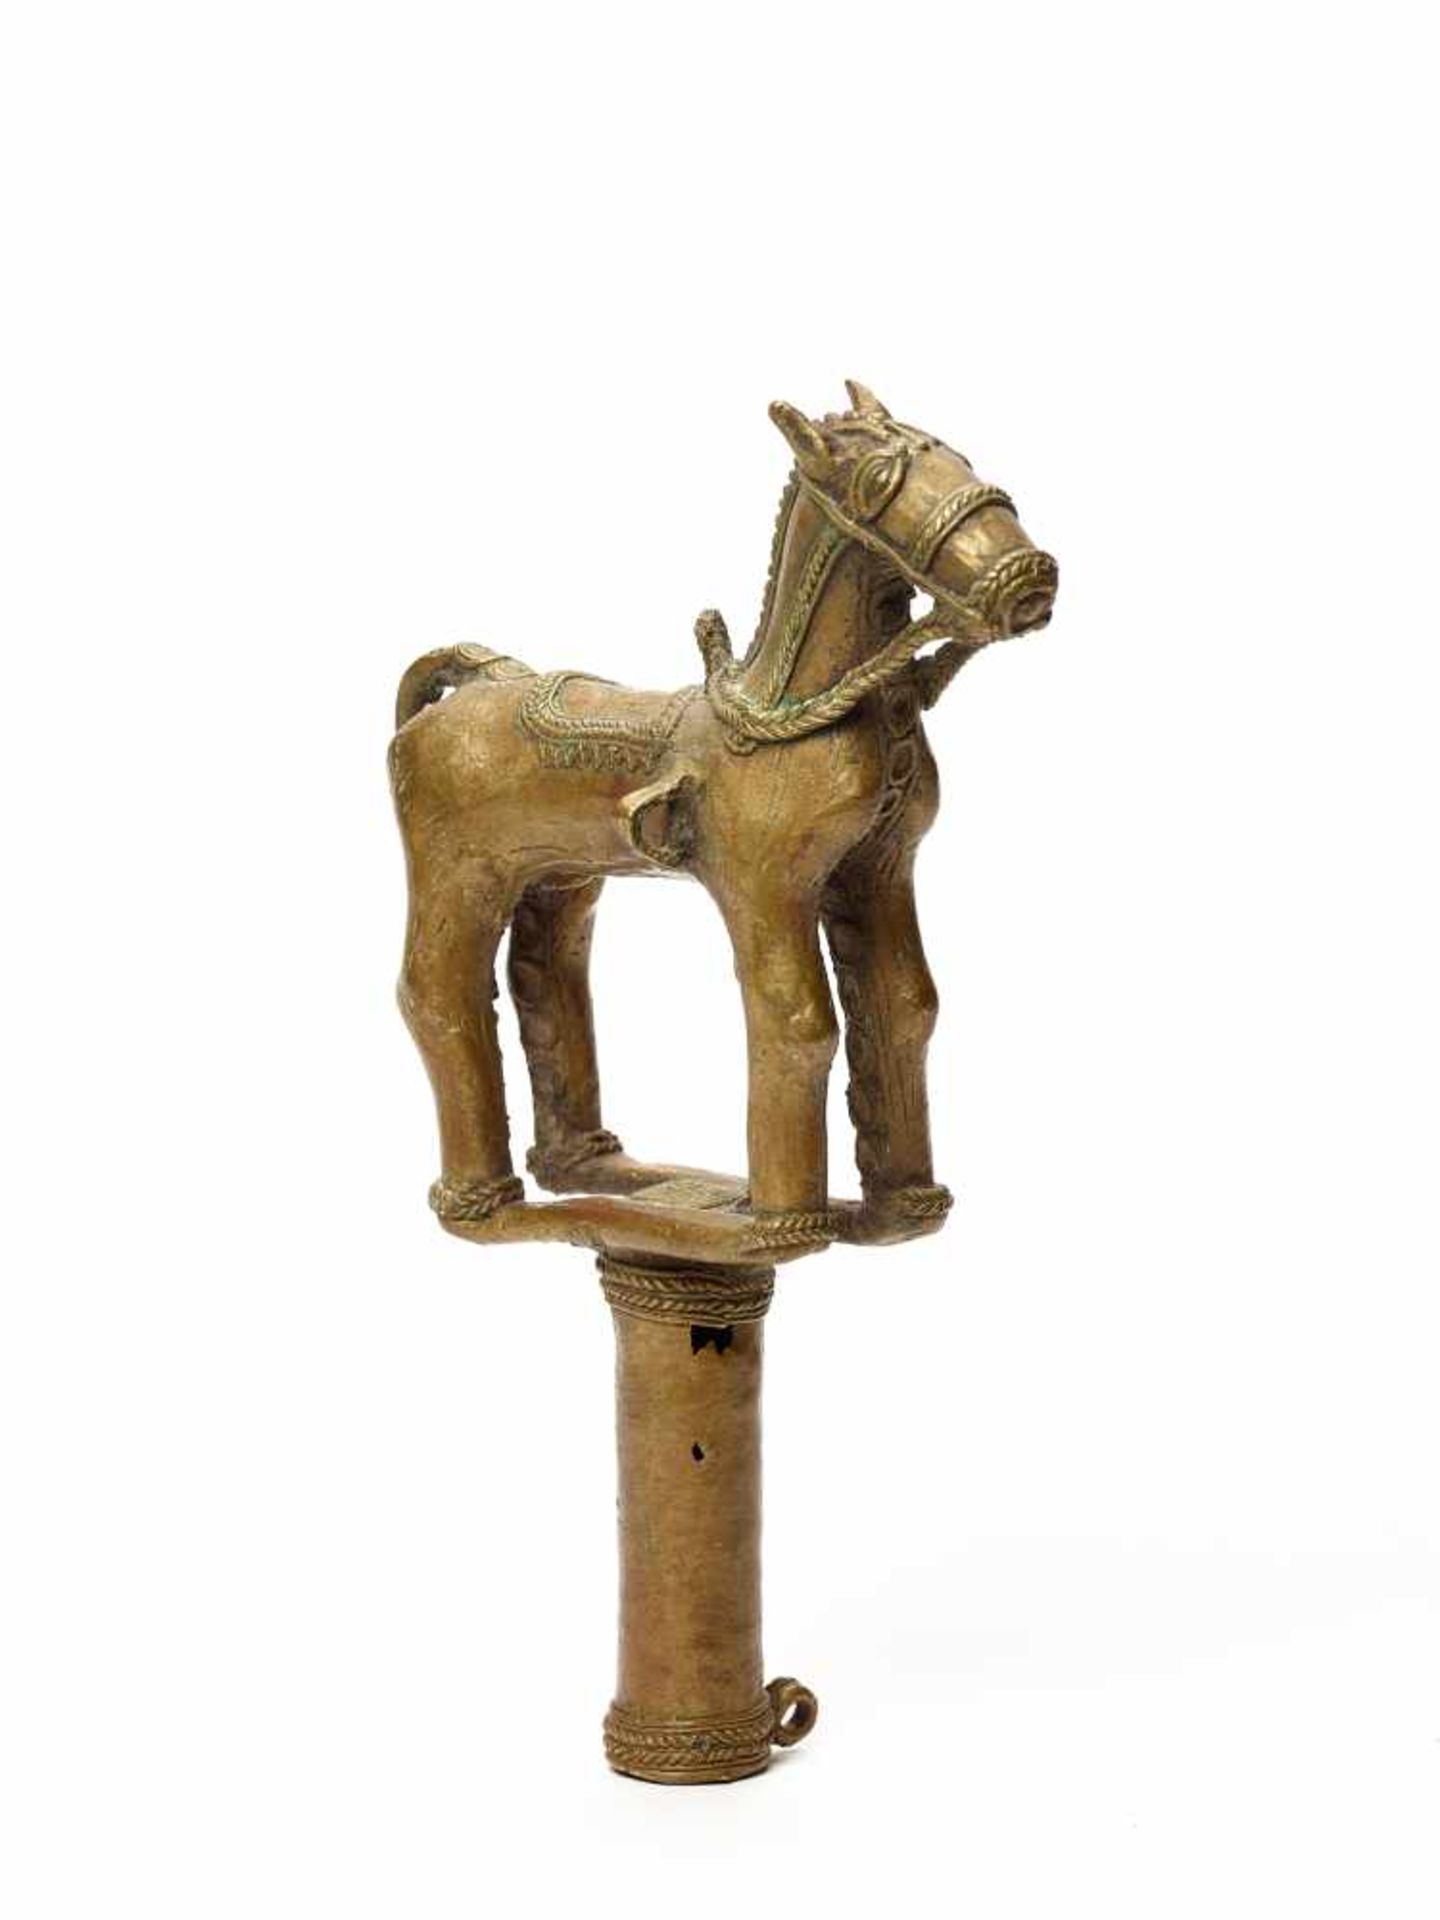 A BASTAR BRONZE WARRIOR HORSE ON HARDGRIPBronzeIndia, 19th-20th centuryThe warrior horse stands on a